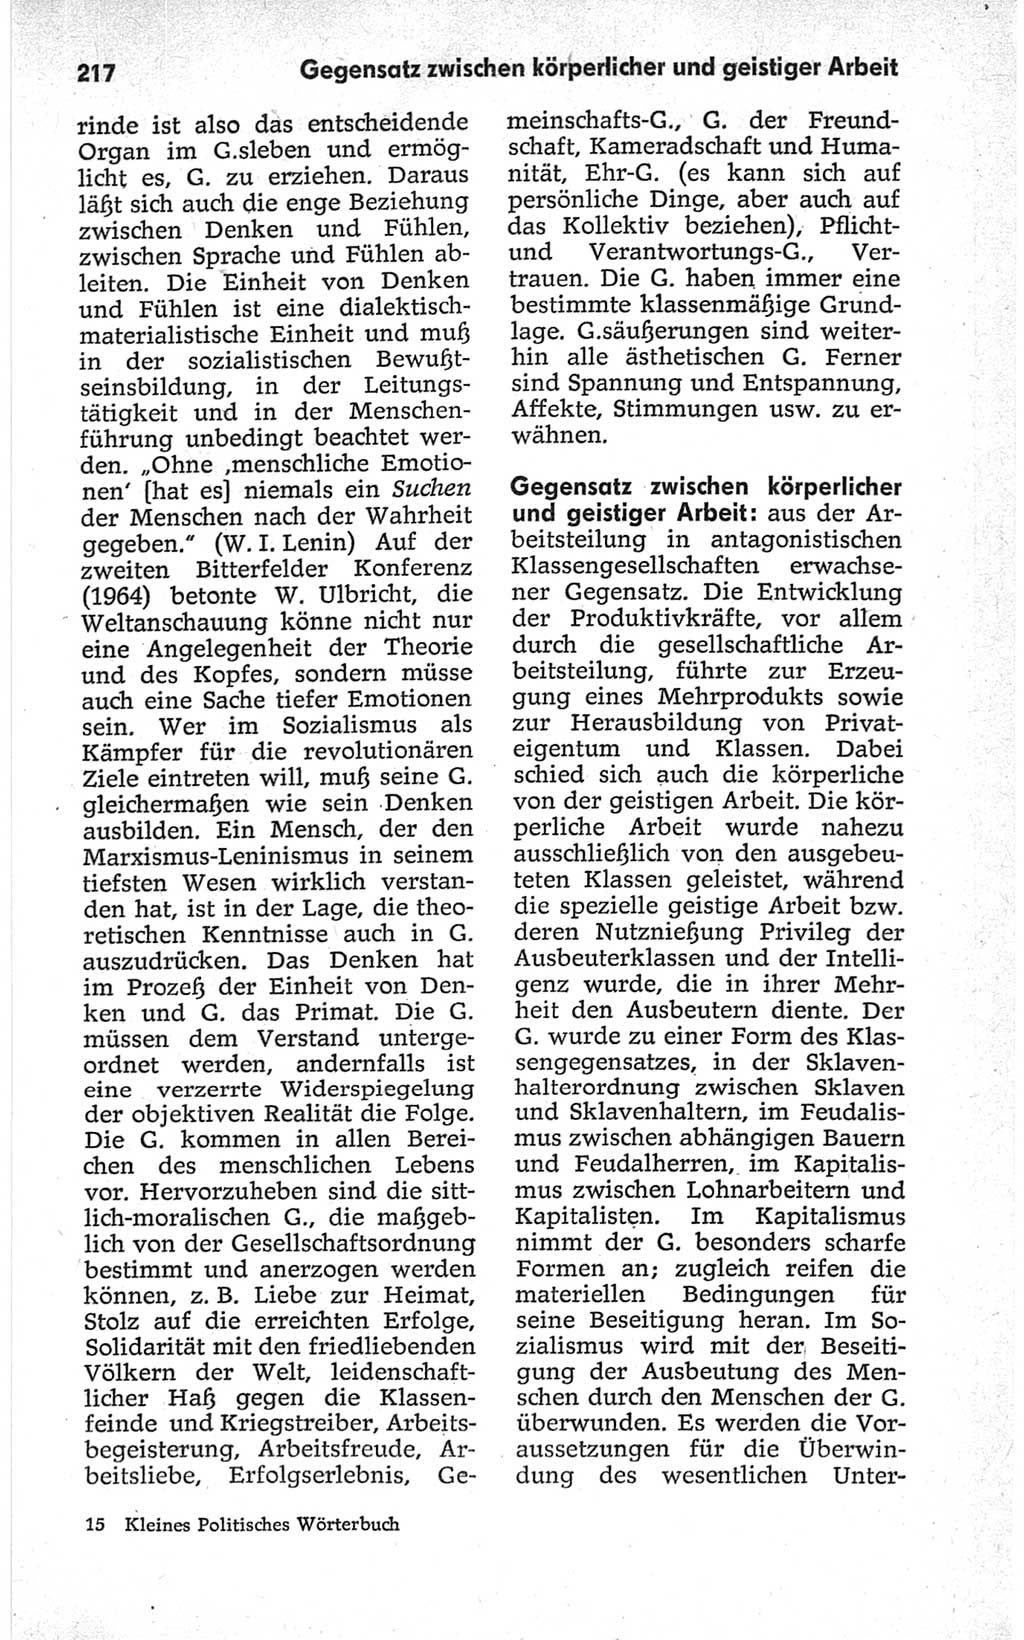 Kleines politisches Wörterbuch [Deutsche Demokratische Republik (DDR)] 1967, Seite 217 (Kl. pol. Wb. DDR 1967, S. 217)